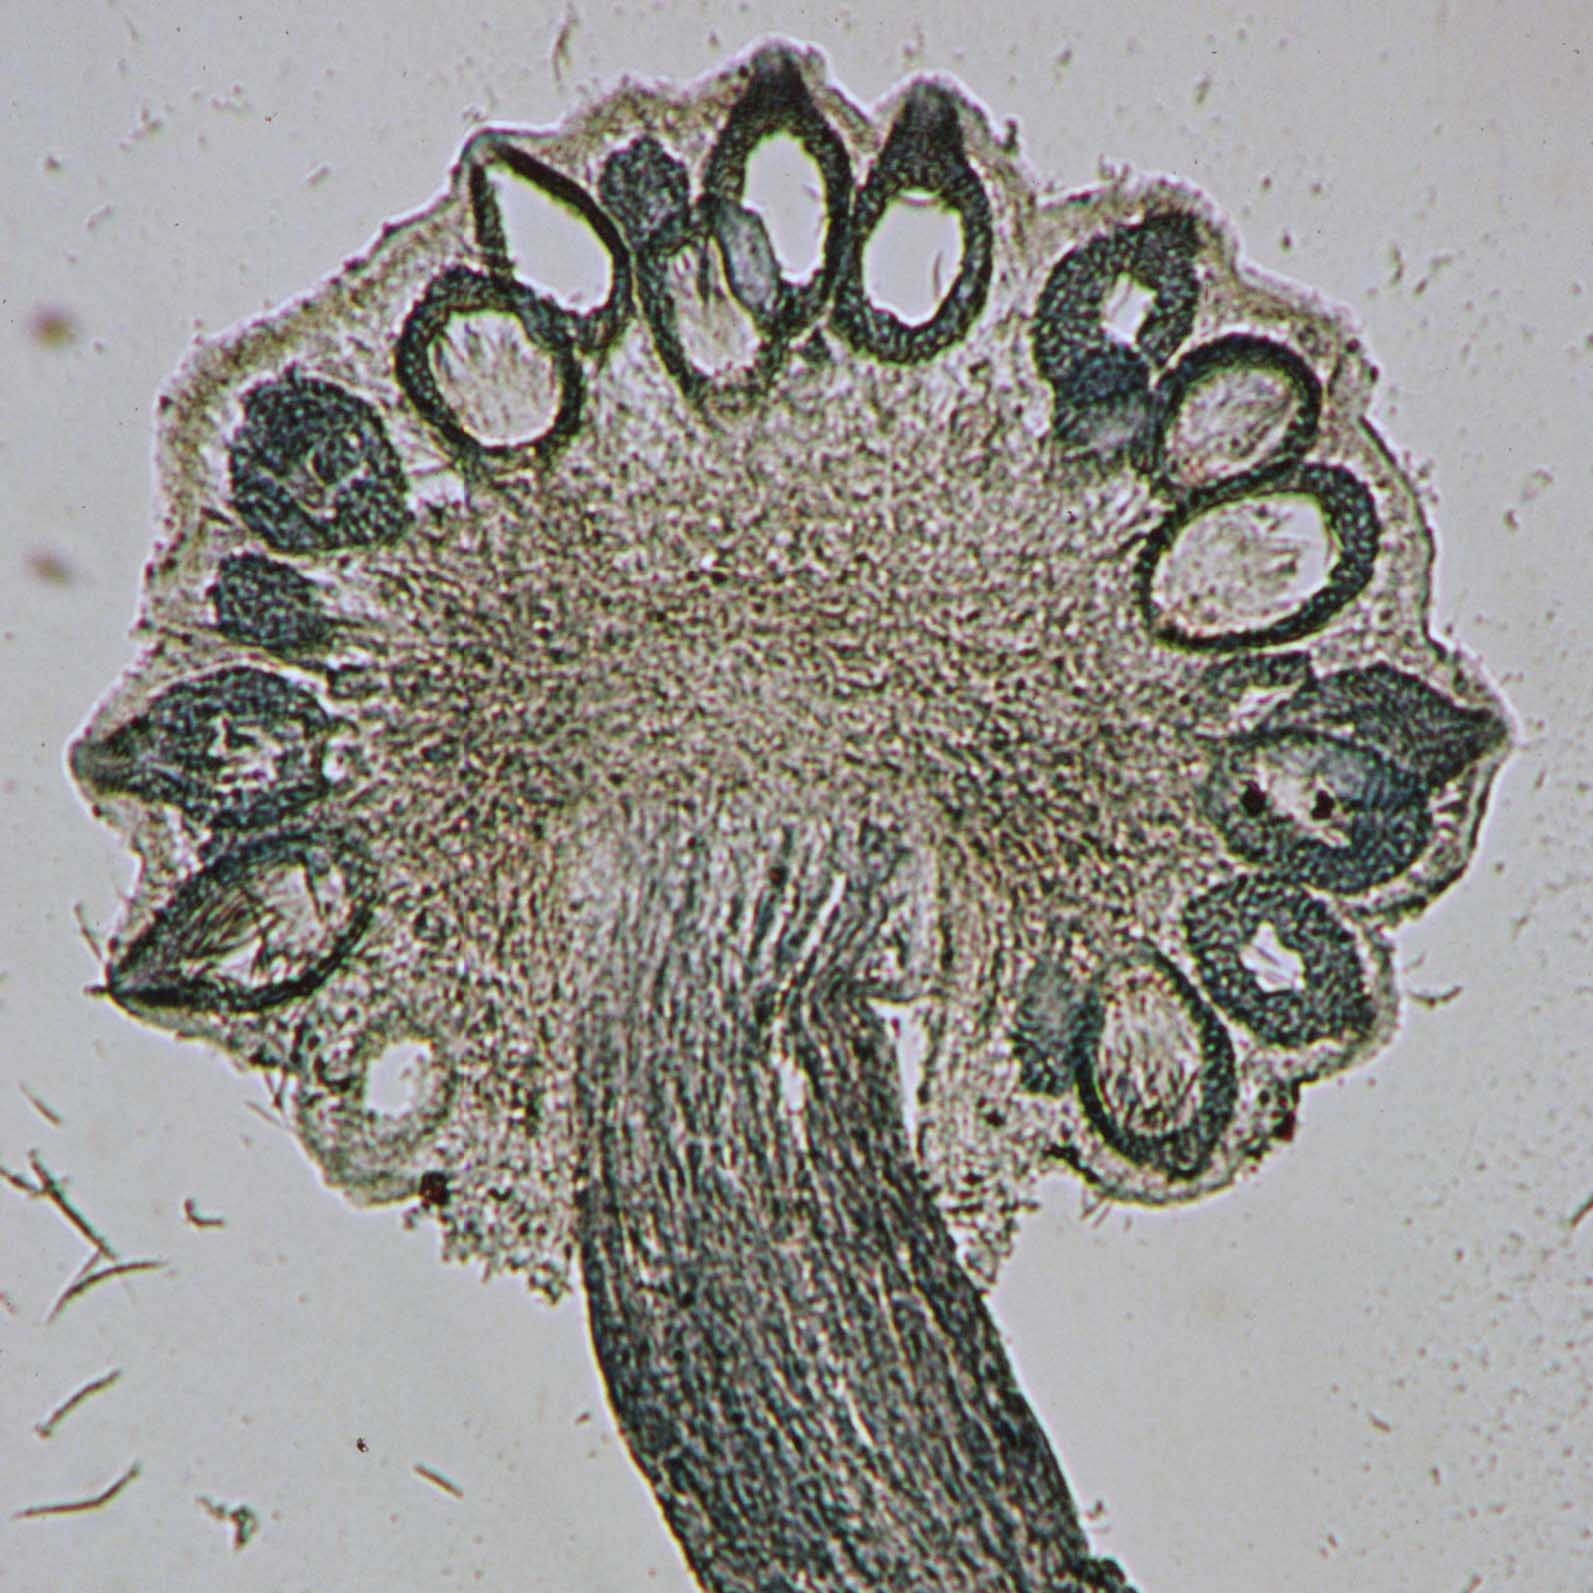 Foto da imagem de microscópio do fungo cravagem ou esporão-de-centeio